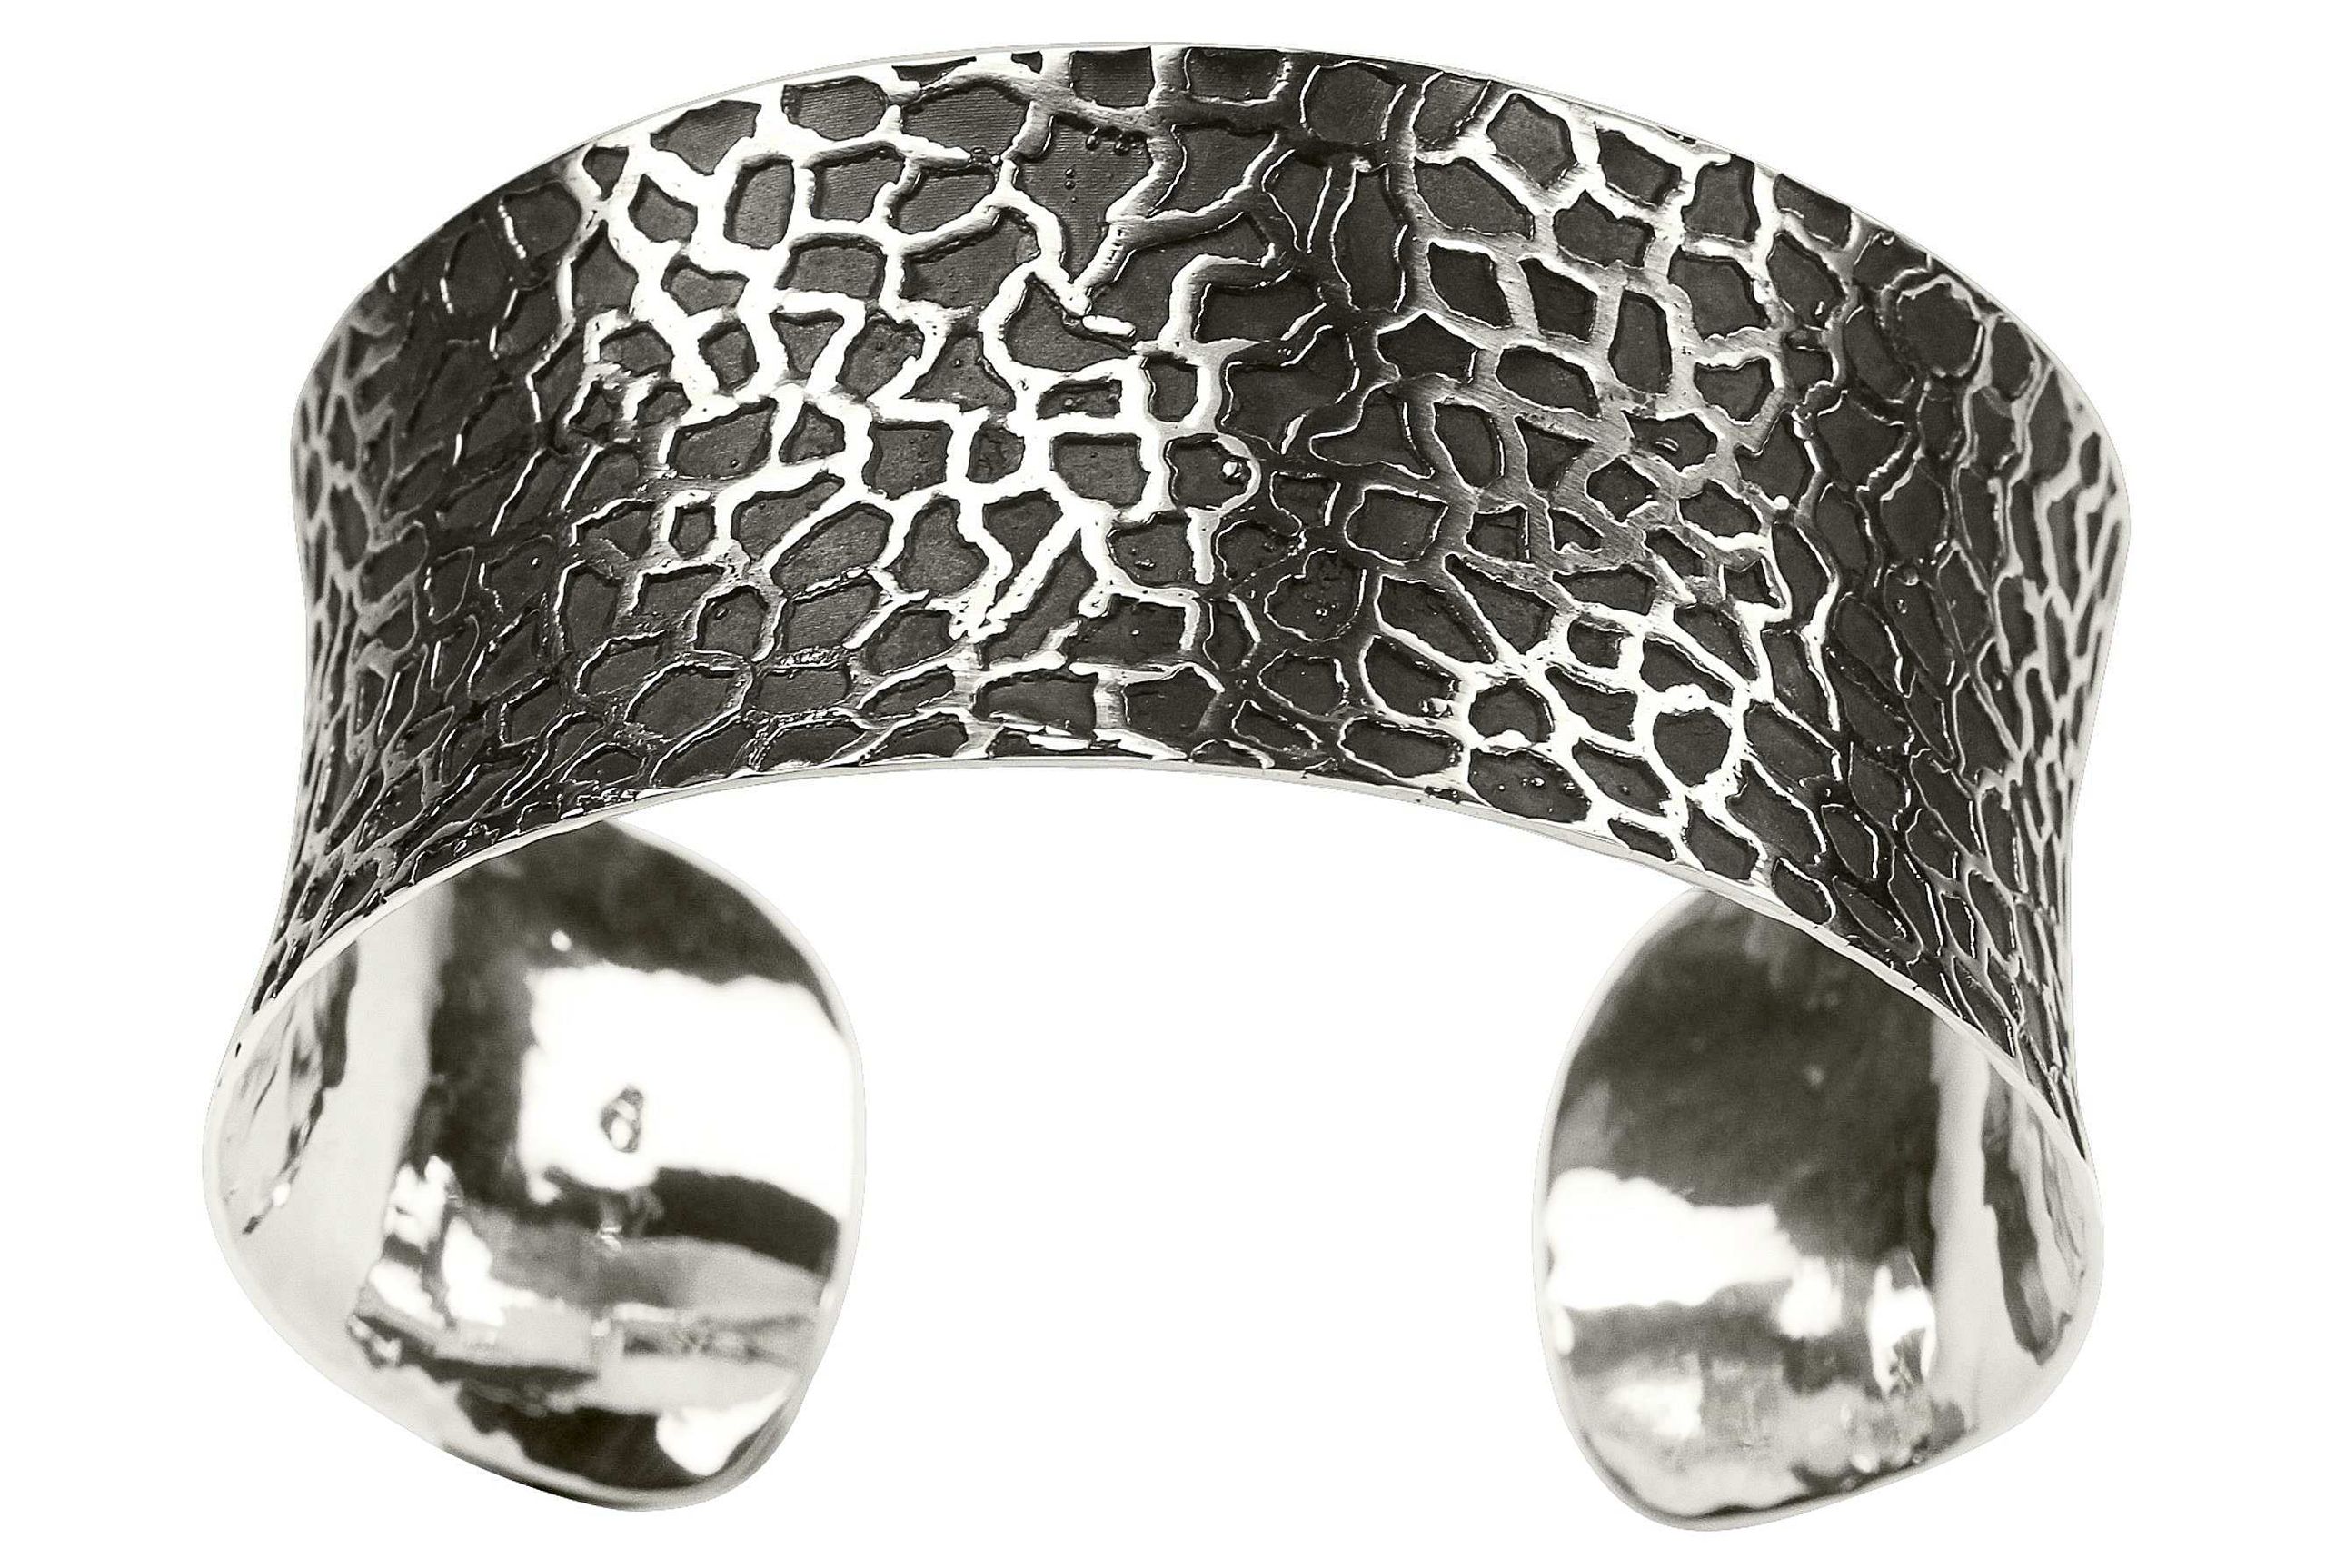 Breiter Armreif aus Silber für Damen mit einer Oberfläche, die durch teilweise Schwärzung des Silber eine Rochenleder-Optik entstehen lässt.